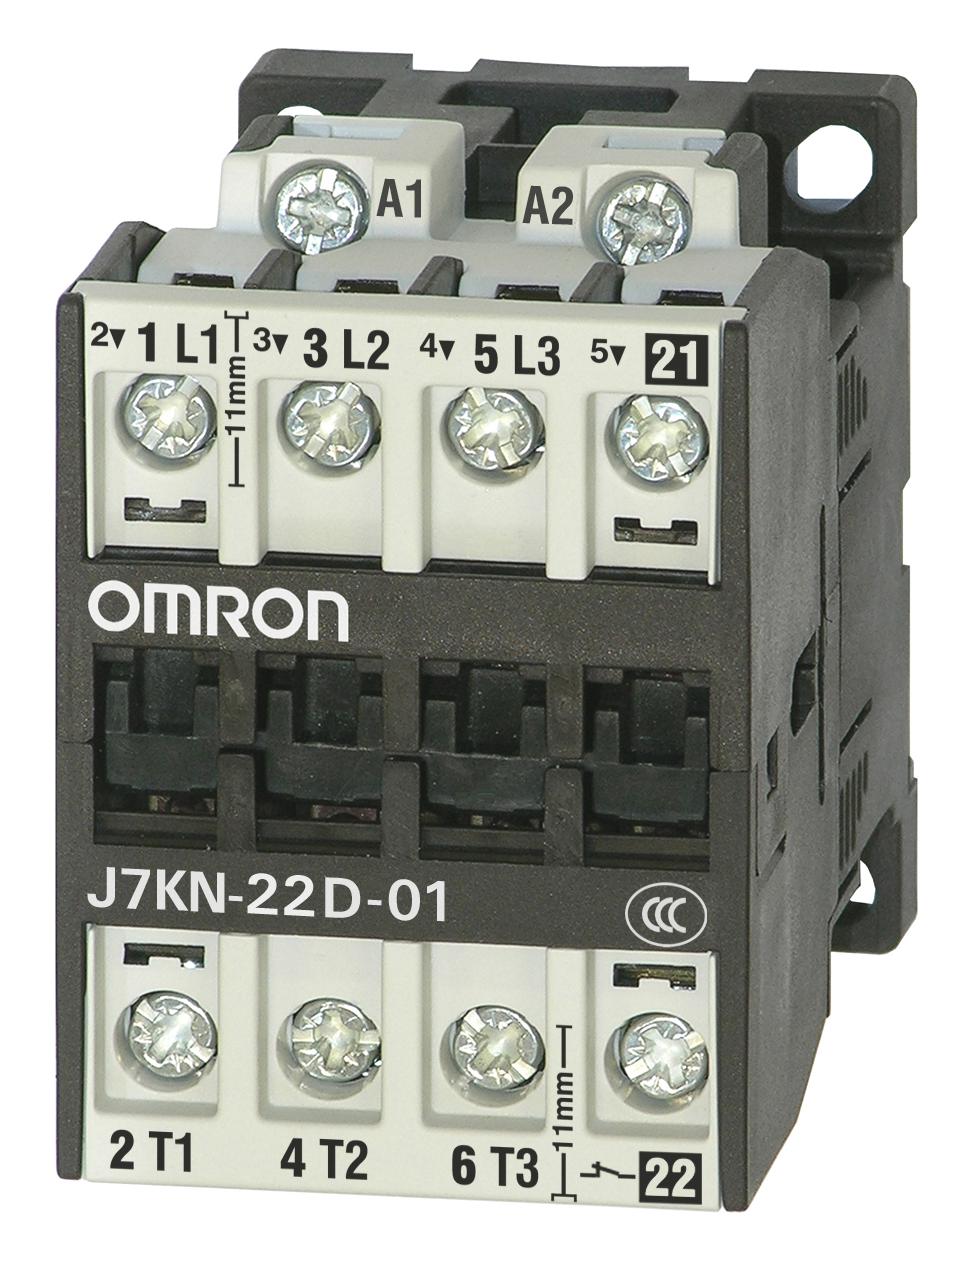 J7KN-22D-01 24D CONTACTORS RELAYS OMRON